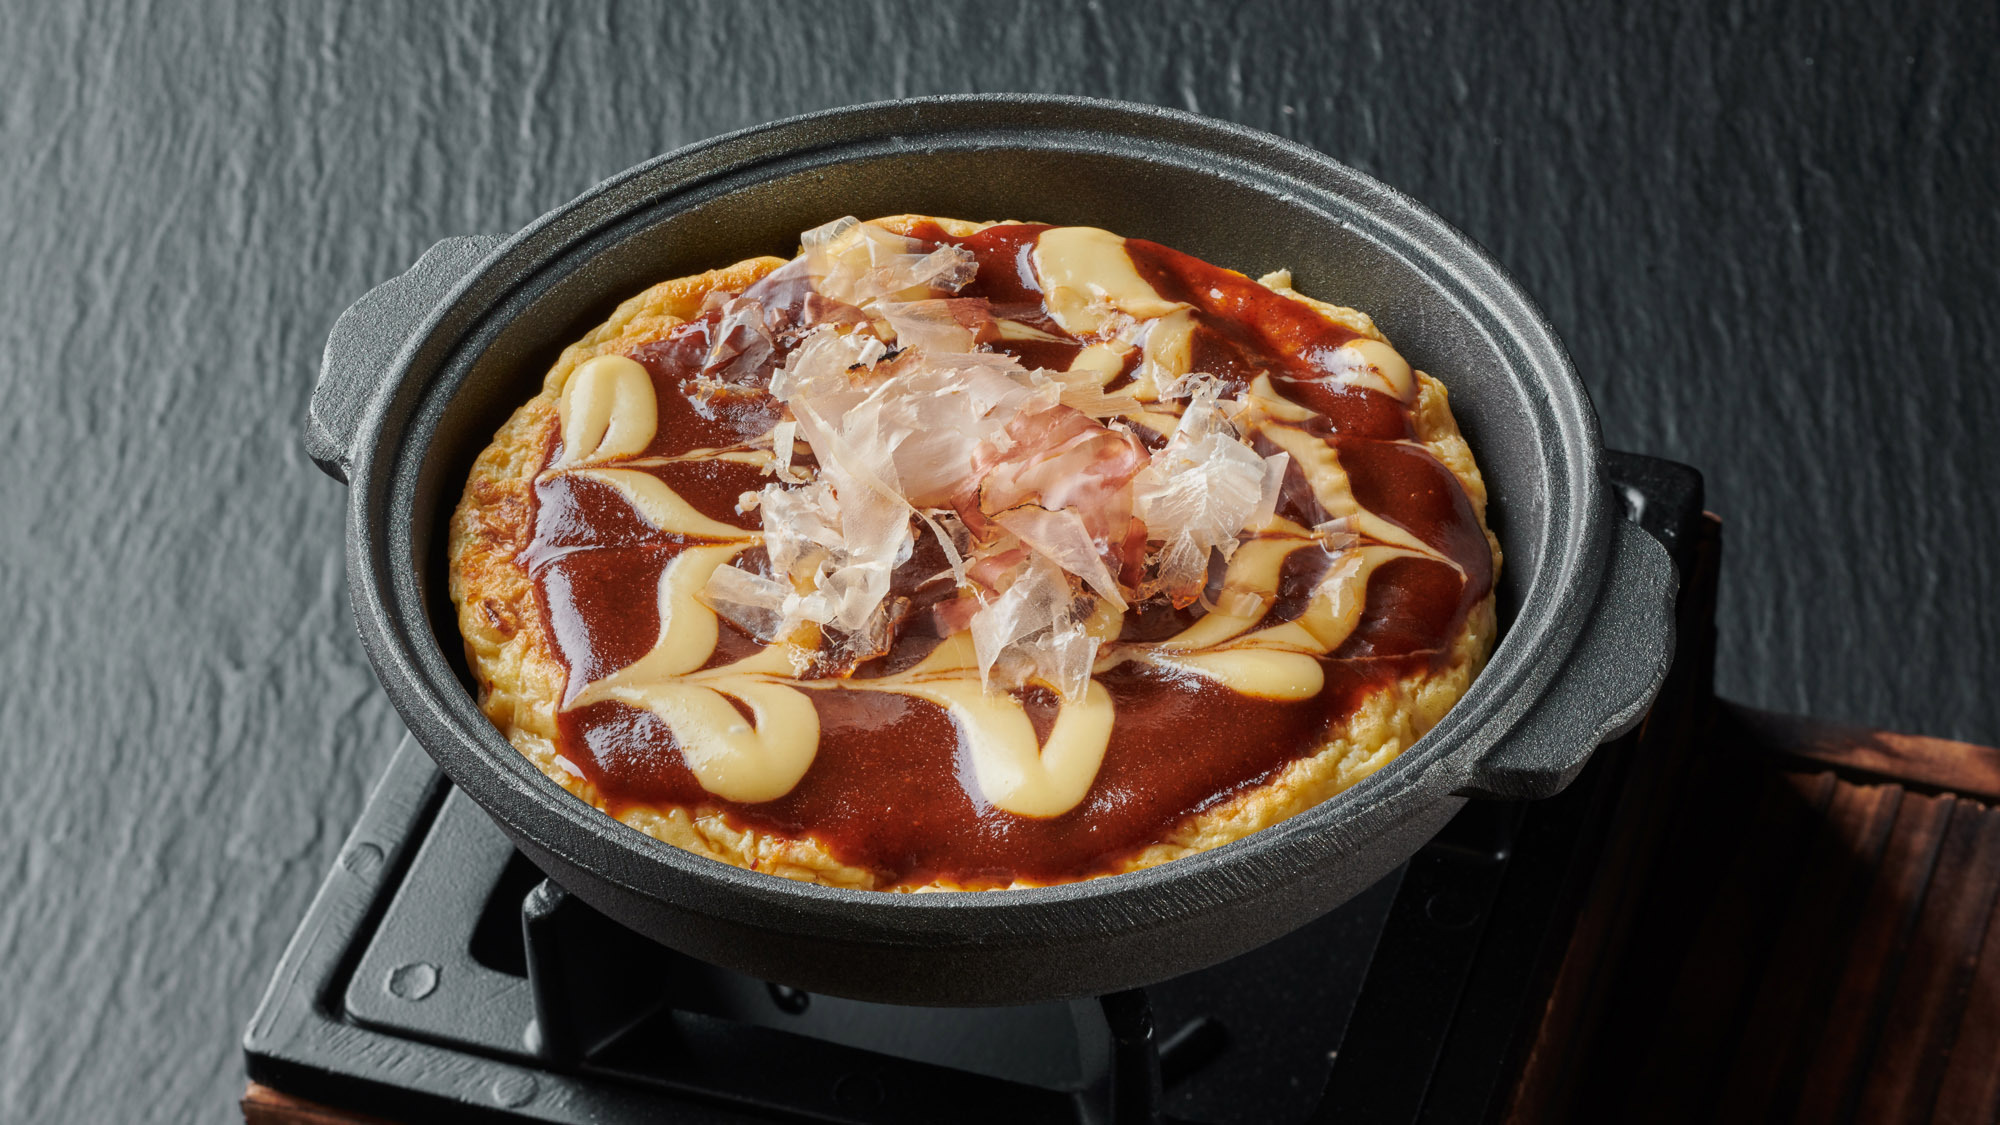 ・【お料理】一風変わった鍋お好み焼き、関西に来たら食べたい一品です